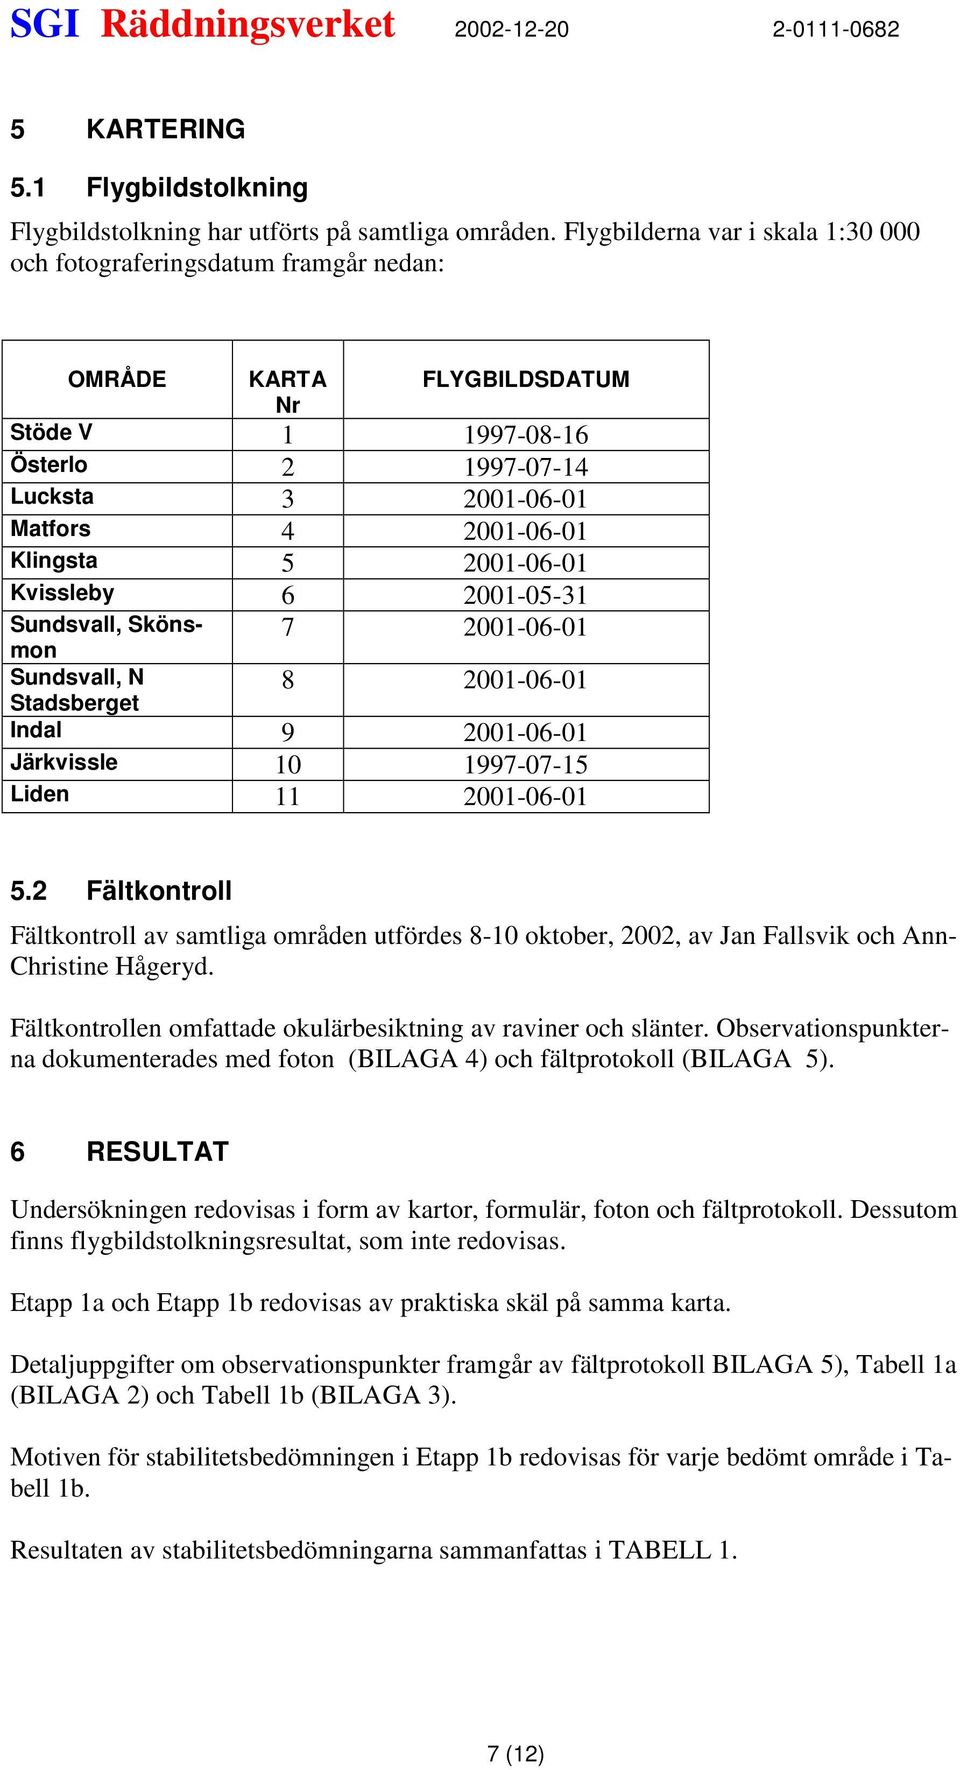 2001-06-01 Kvissleby 6 2001-05-31 Sundsvall, Skönsmon Sundsvall, N Stadsberget 7 2001-06-01 8 2001-06-01 Indal 9 2001-06-01 Järkvissle 10 1997-07-15 Liden 11 2001-06-01 5.